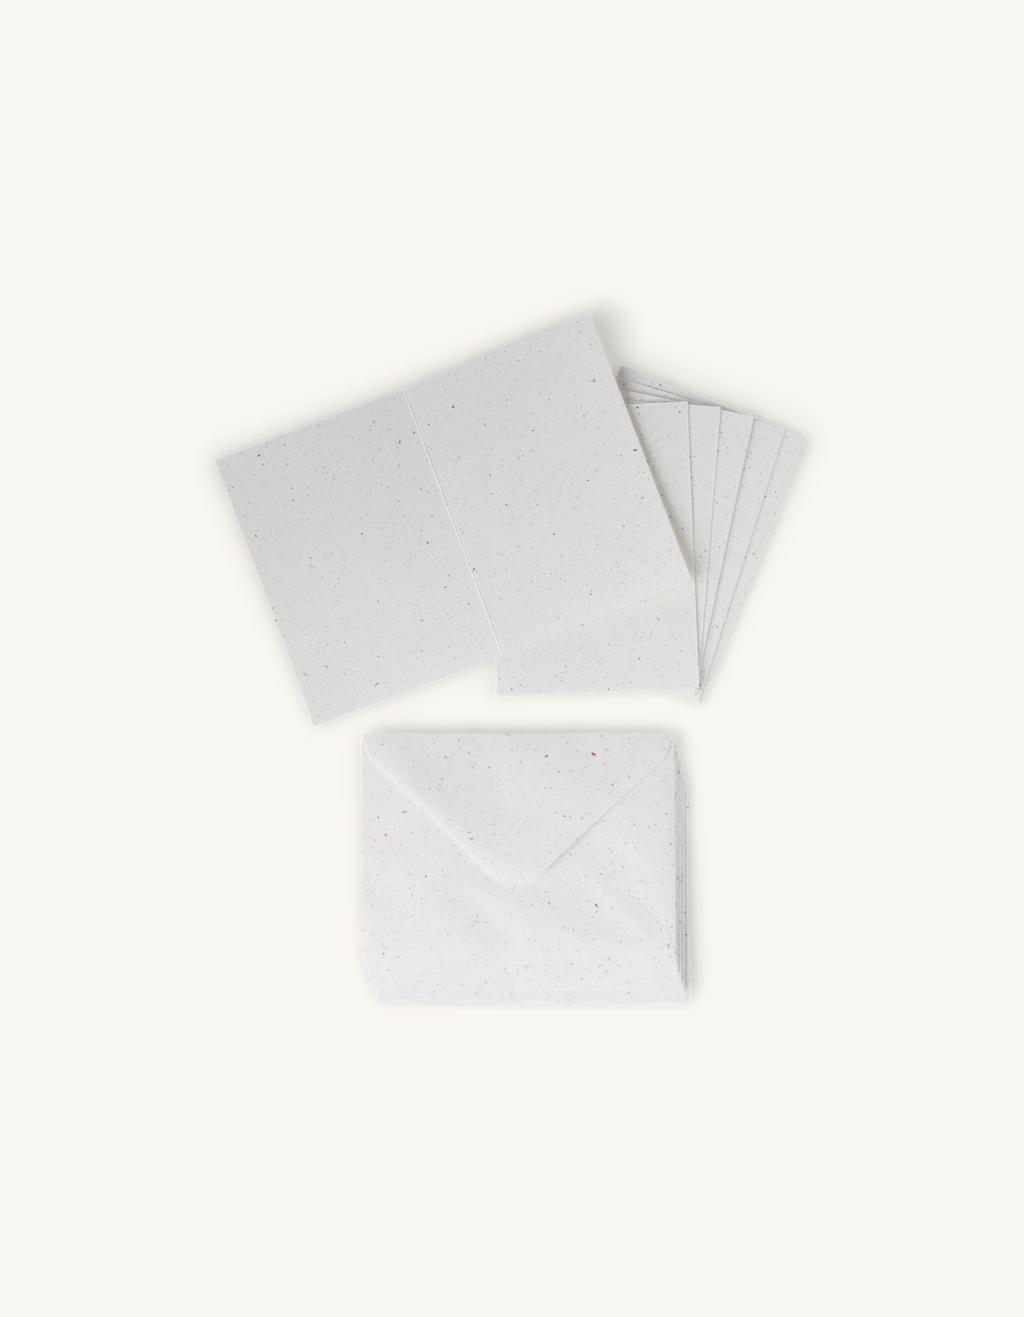 Kaarten met enveloppen | Papier. 15,2 x 10,8/16,2 x 11,5 cm. 220/120 6 Søstrene Grene